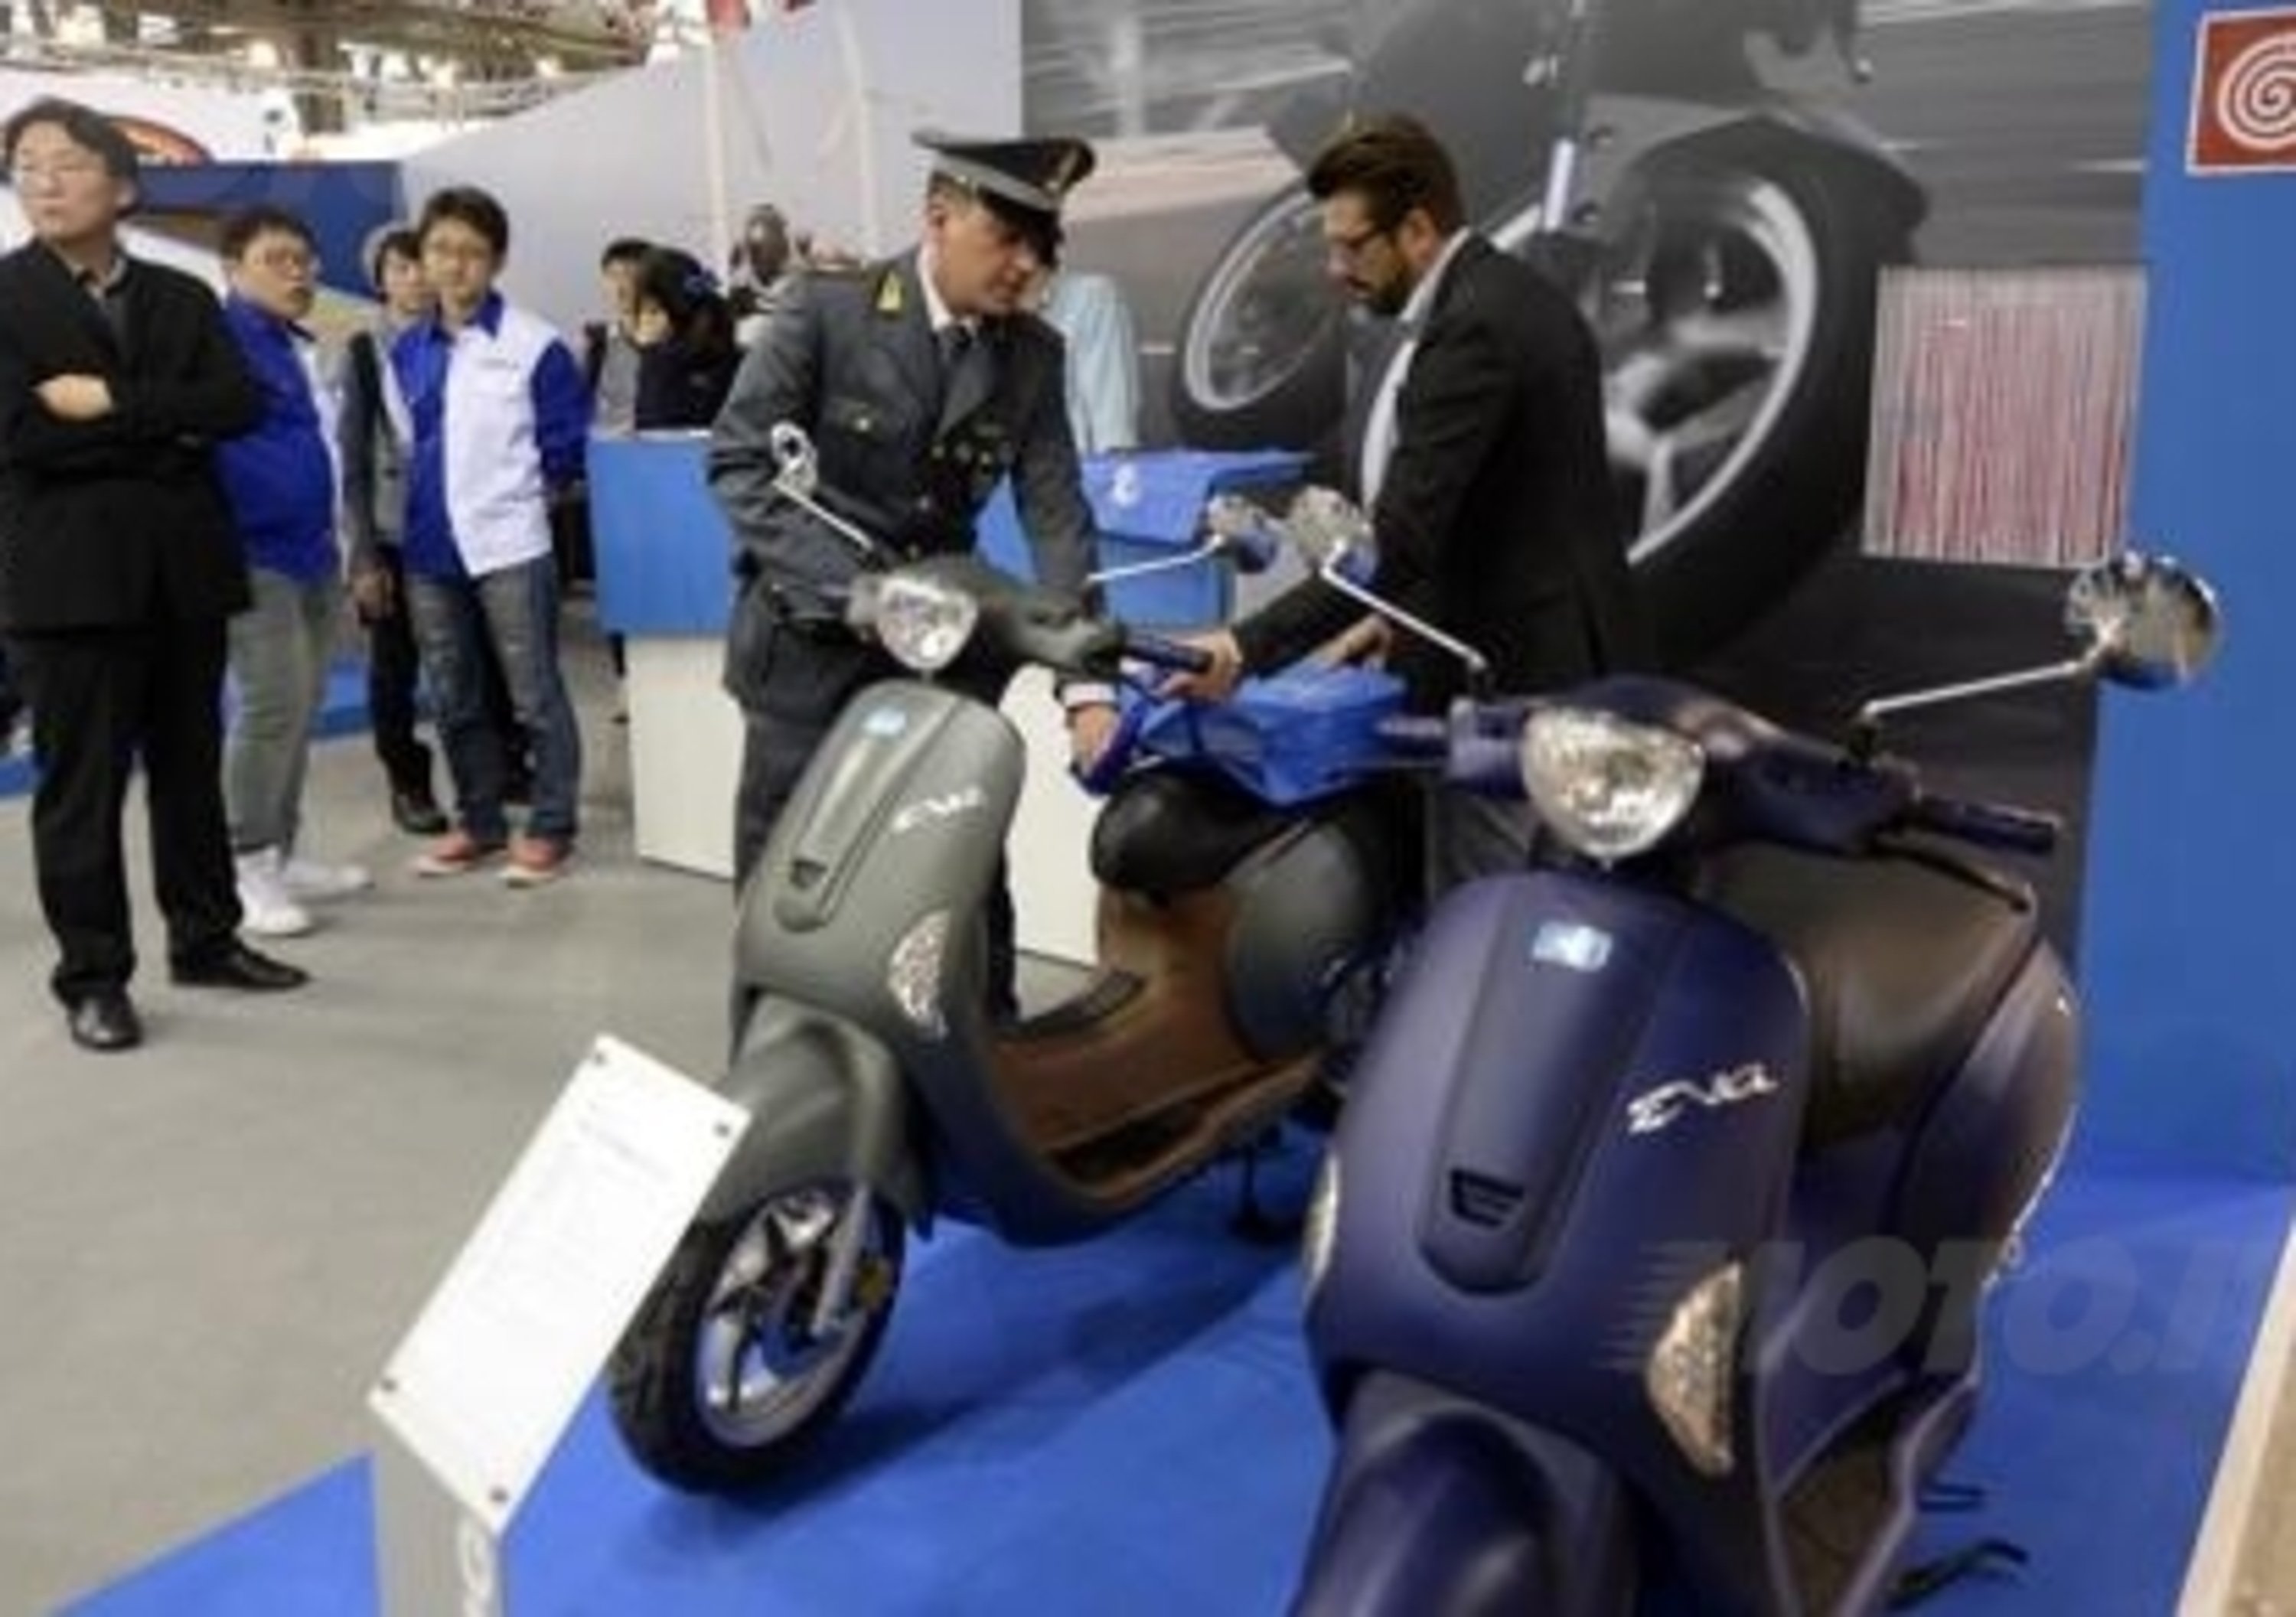 EICMA 2013: Sequestrate dalla Finanza 11 scooter copie della Vespa